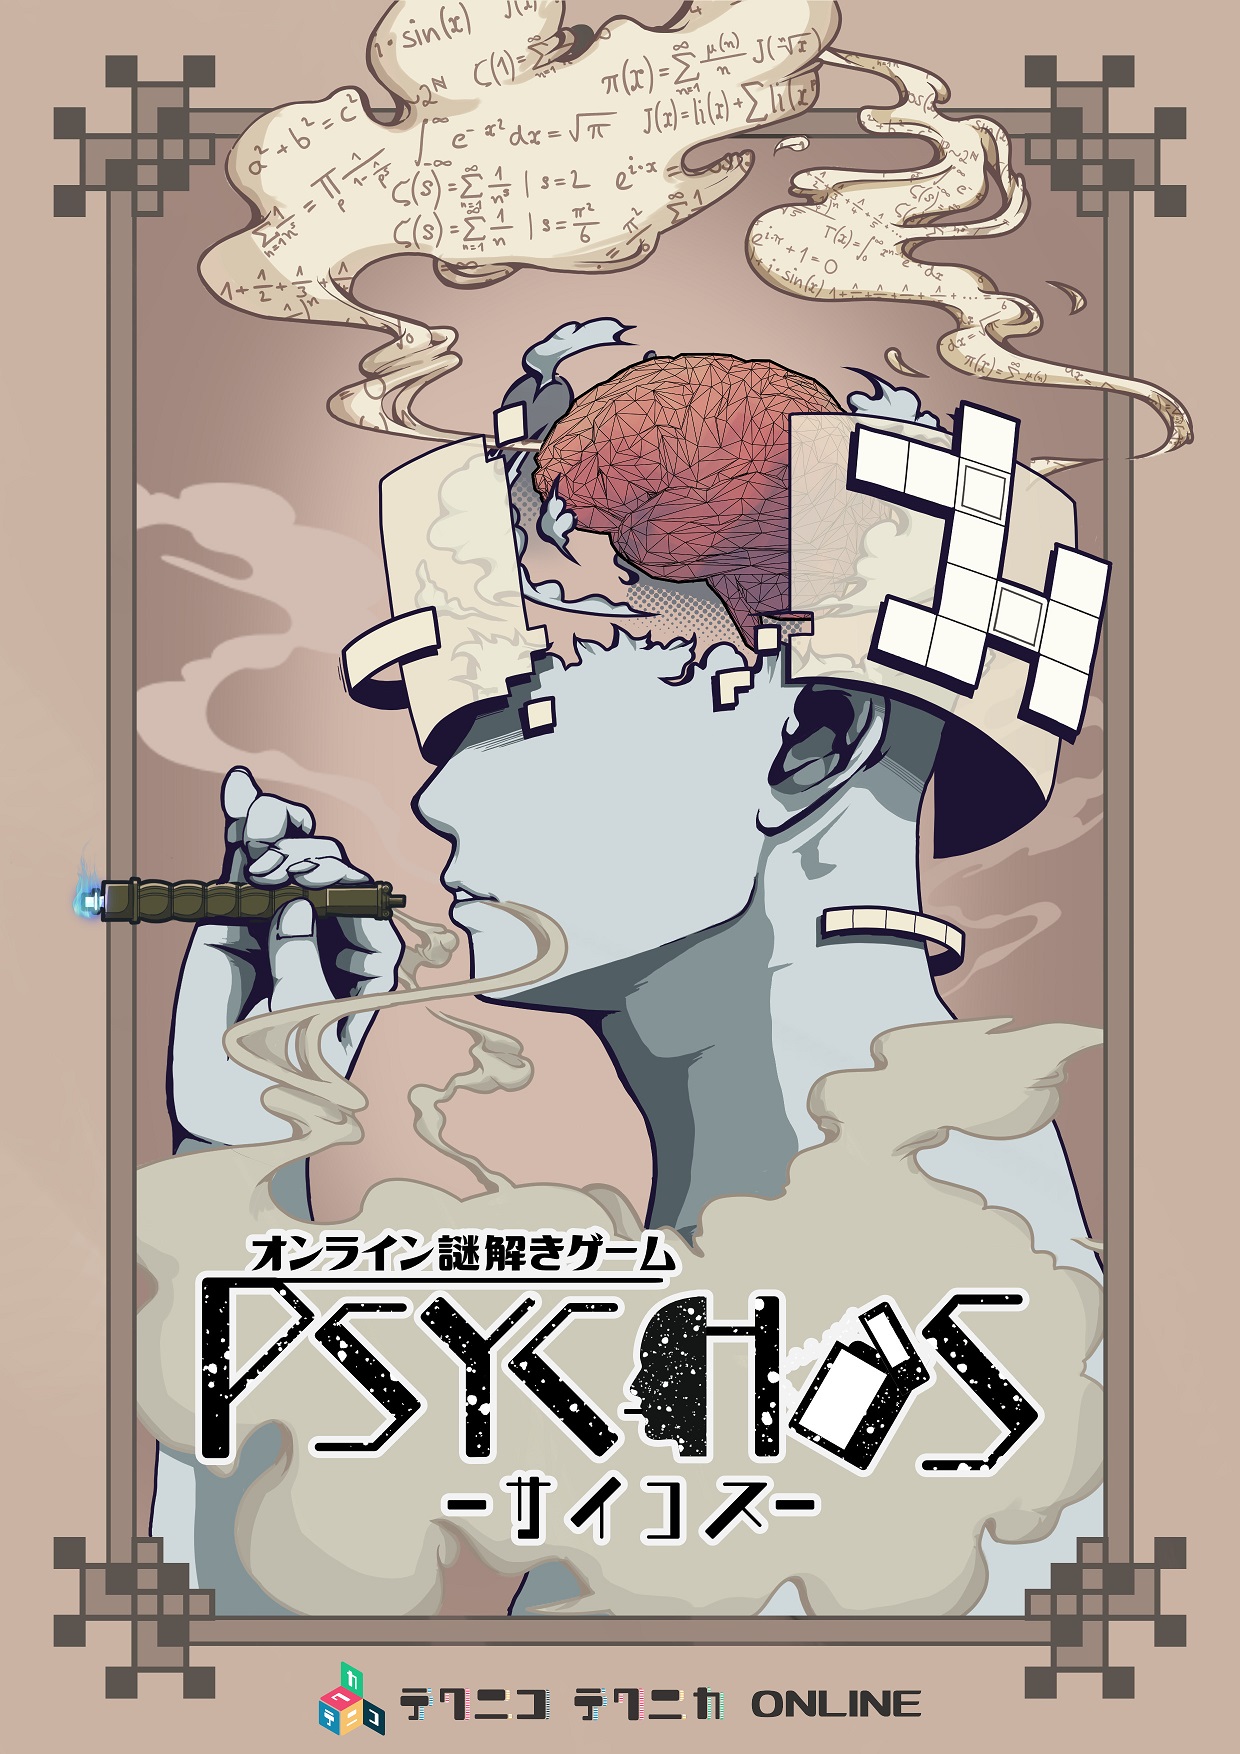 テクニコテクニカ『PSYCHOS』体験型オンライン謎解きゲーム